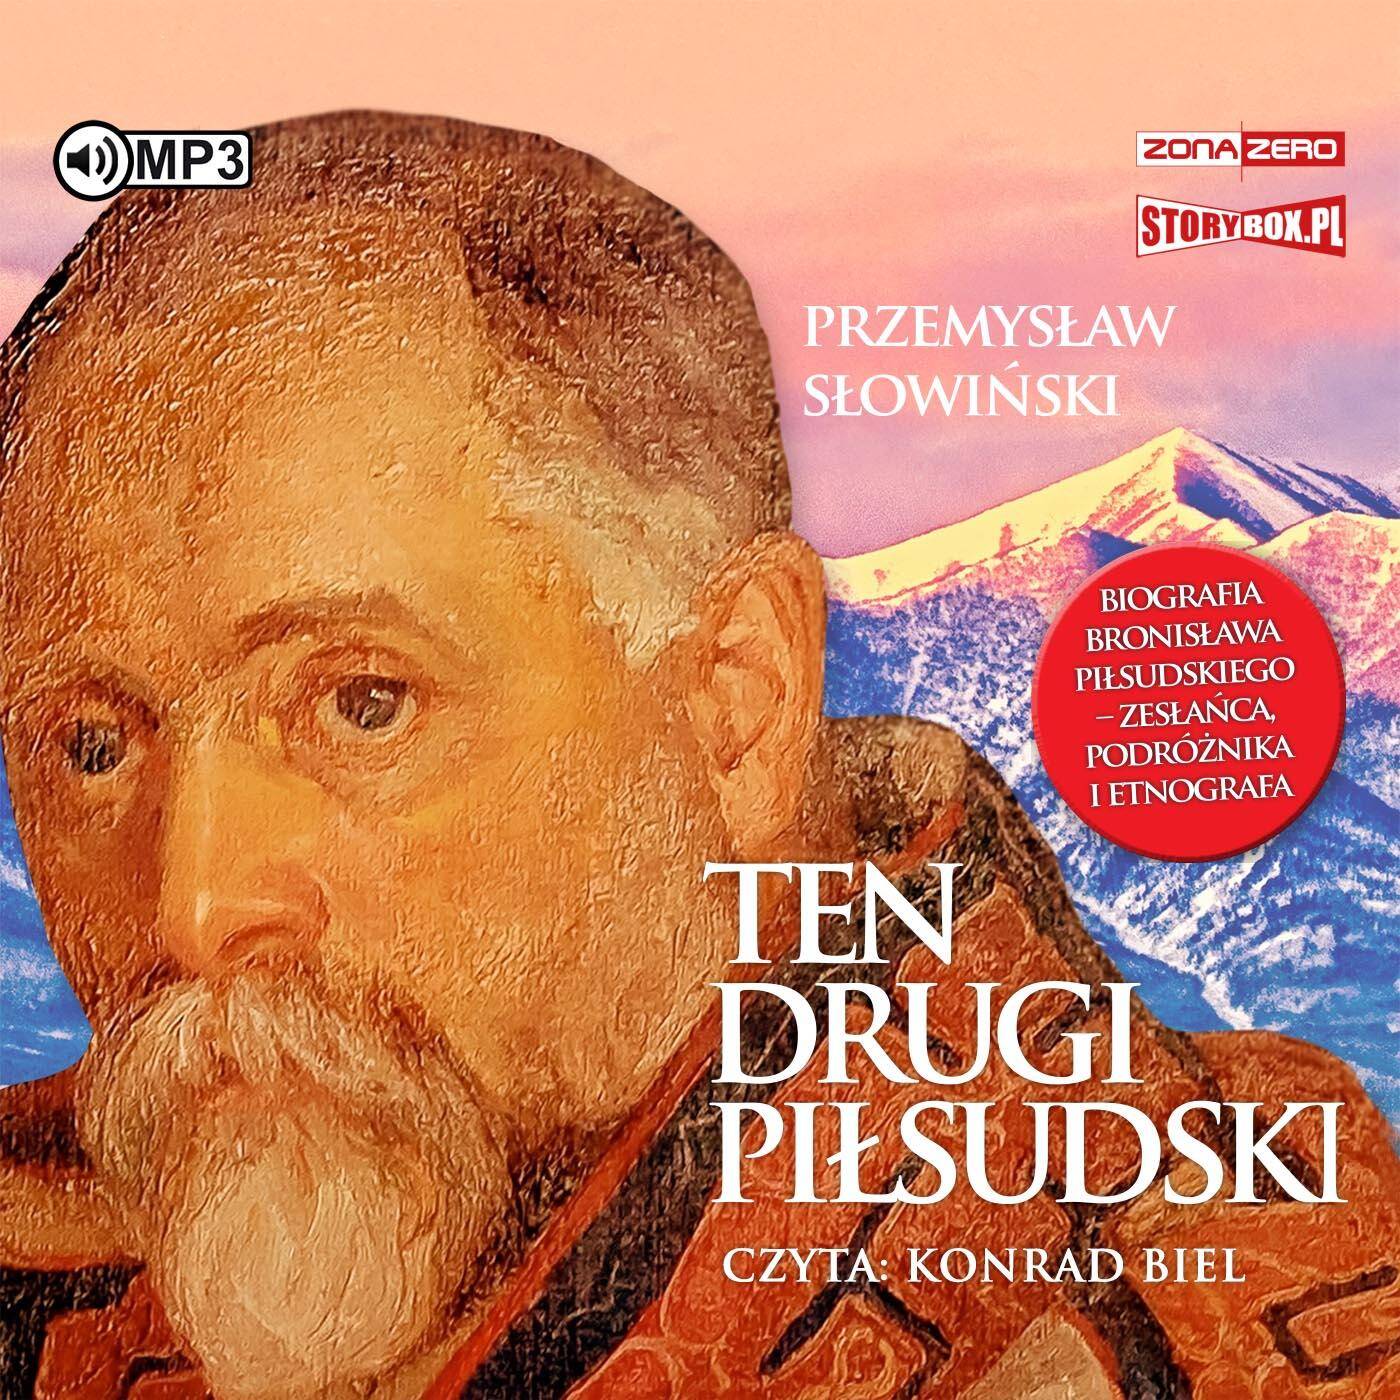 CD MP3 Ten drugi Piłsudski. Biografia Bronisława Piłsudskiego – zesłańca, podróżnika i etnografa